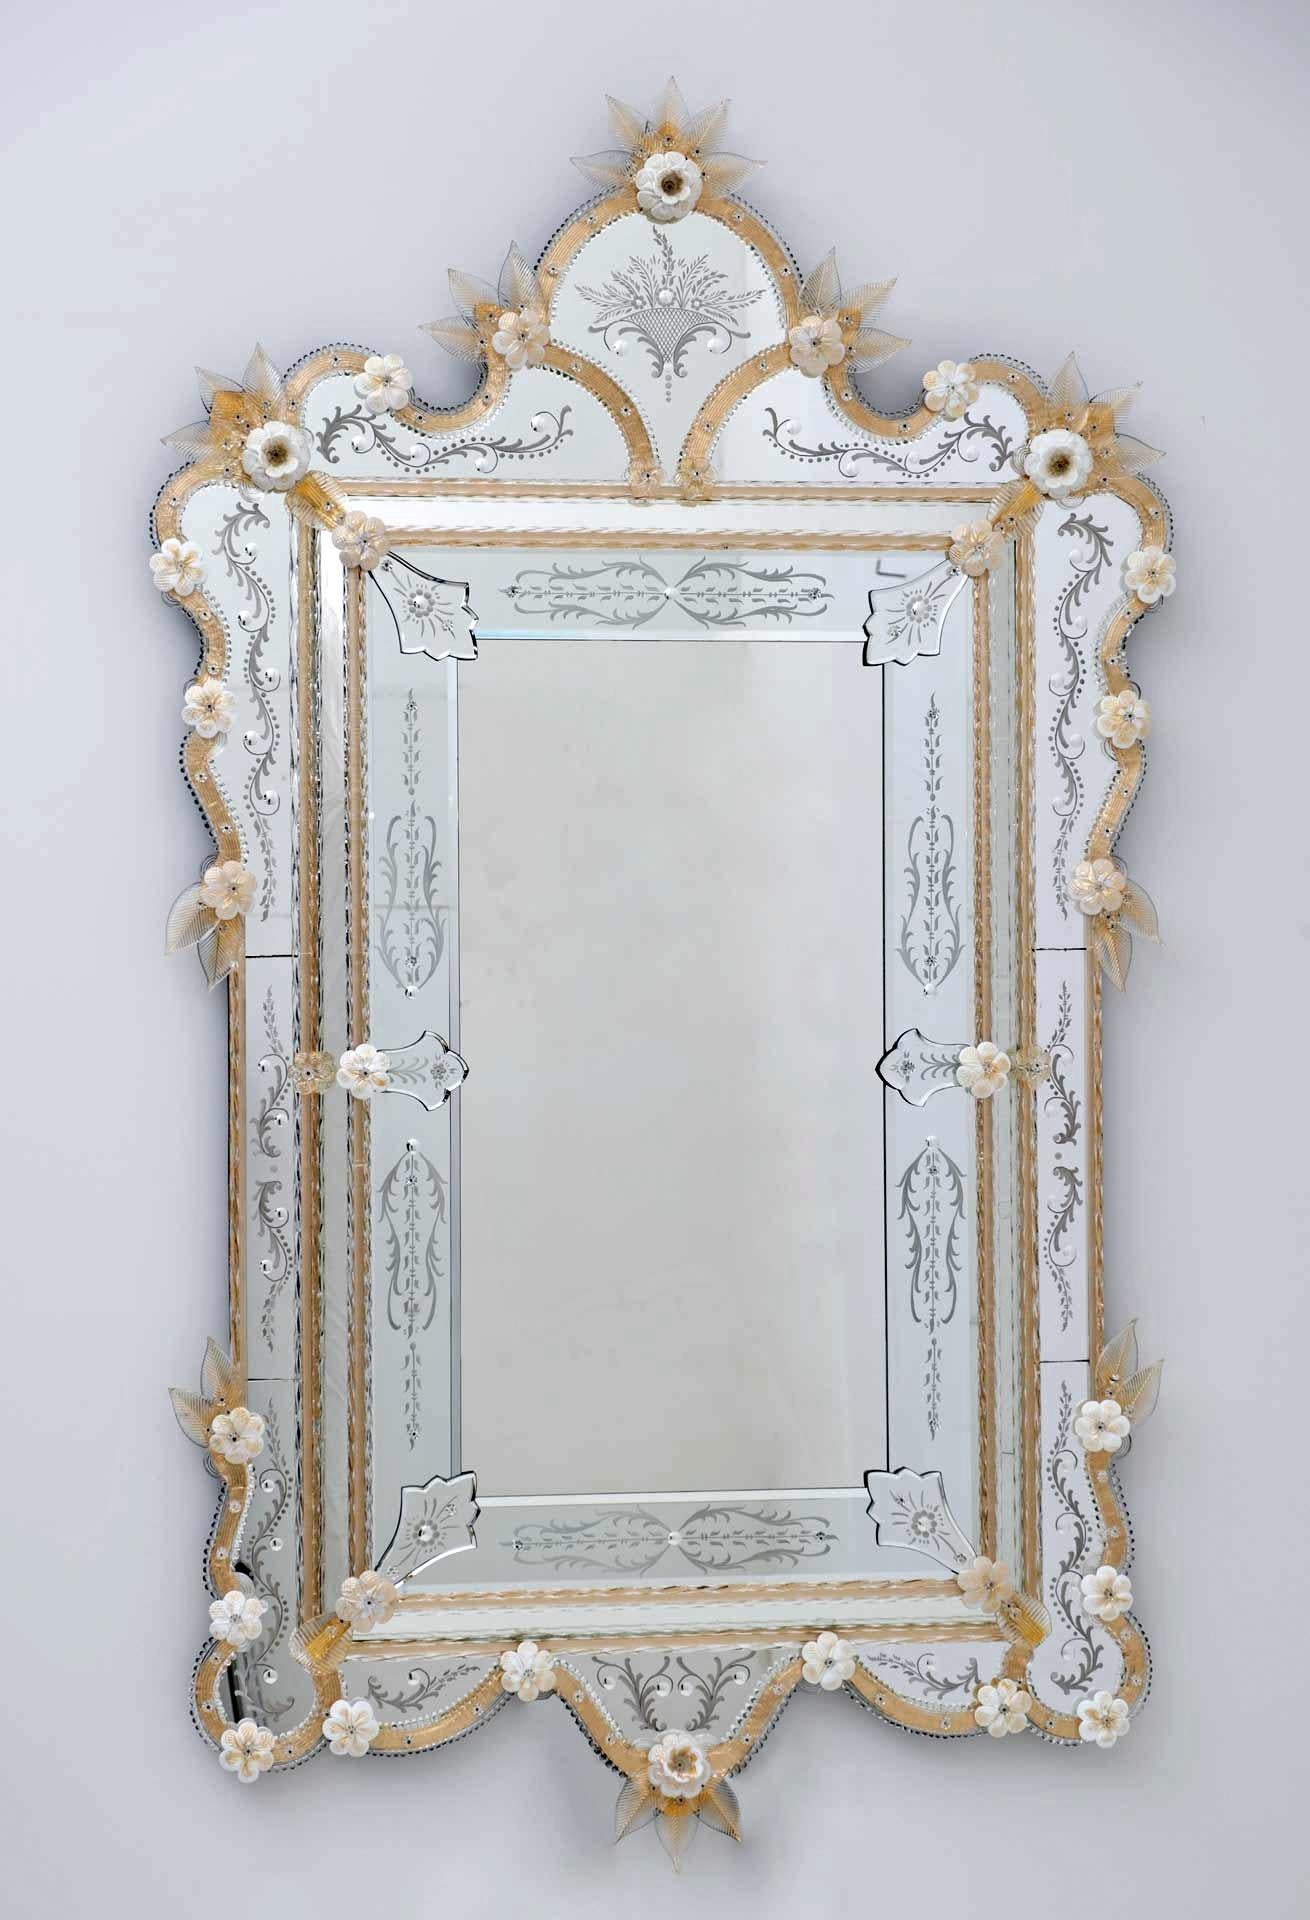 Il s'agit d'un ravissant miroir vénitien classique de l'île de Murano en couleur or avec finition fleur or blanc, gravé et travaillé entièrement à la main selon la tradition de Murano, avec des parties arrondies et gravées à la main dans les angles.